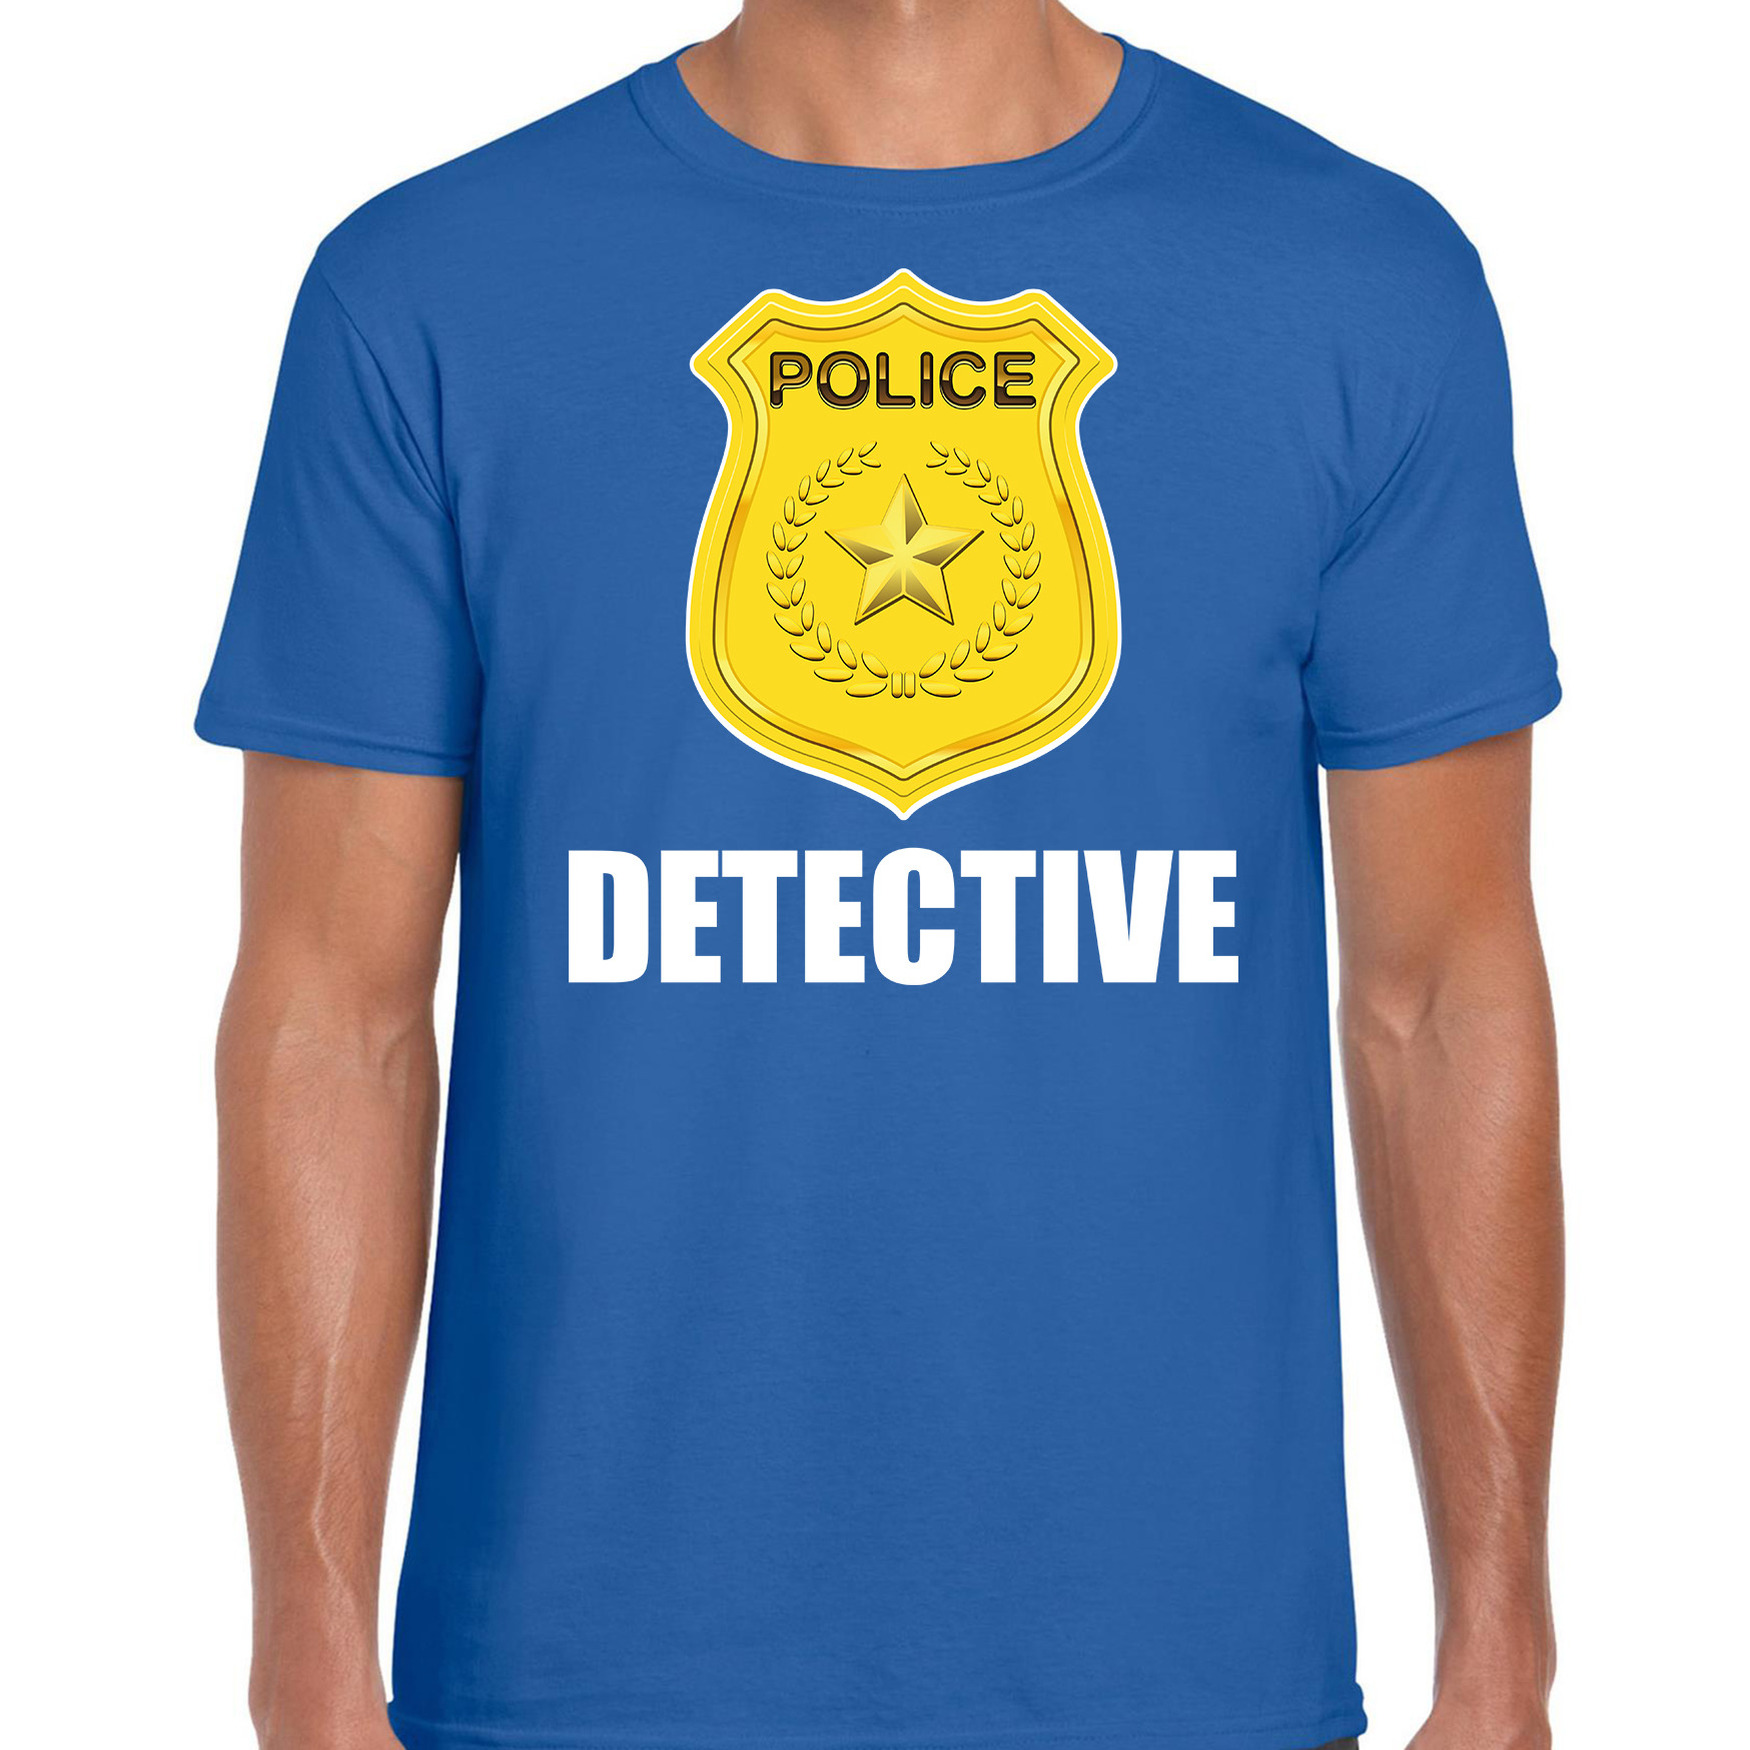 Politie-police embleem detective t-shirt blauw voor heren